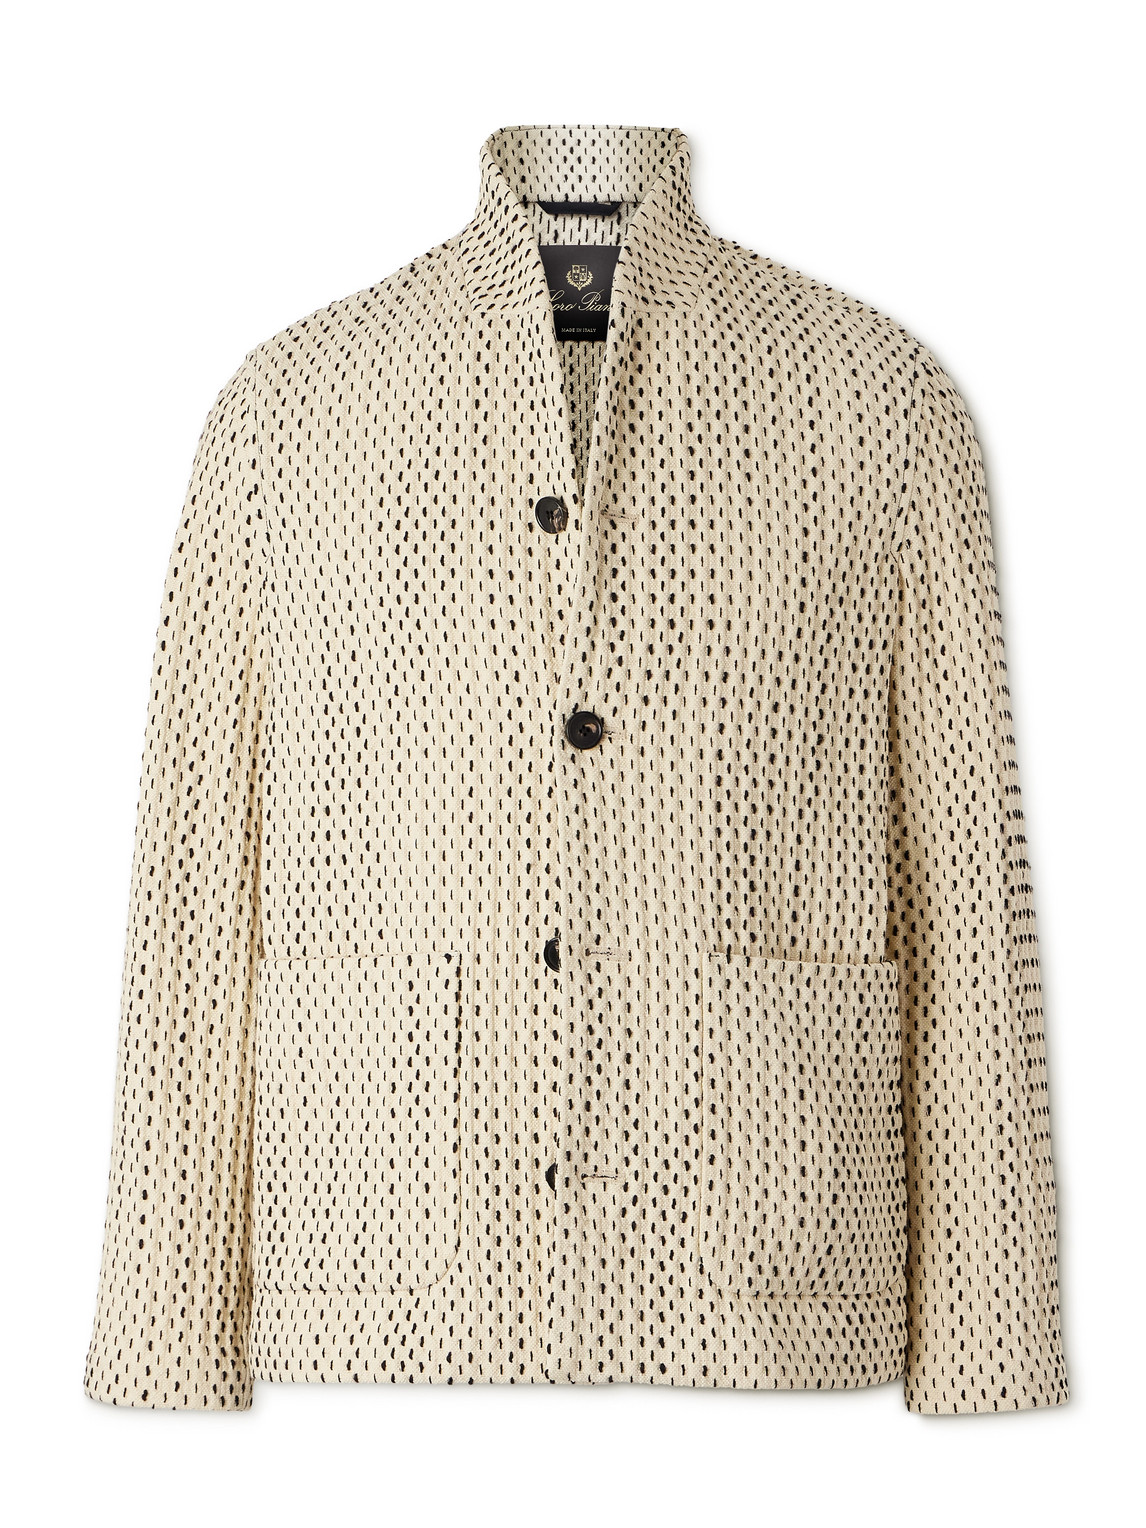 Joren Textured-Knit Cotton-Blend Jacket